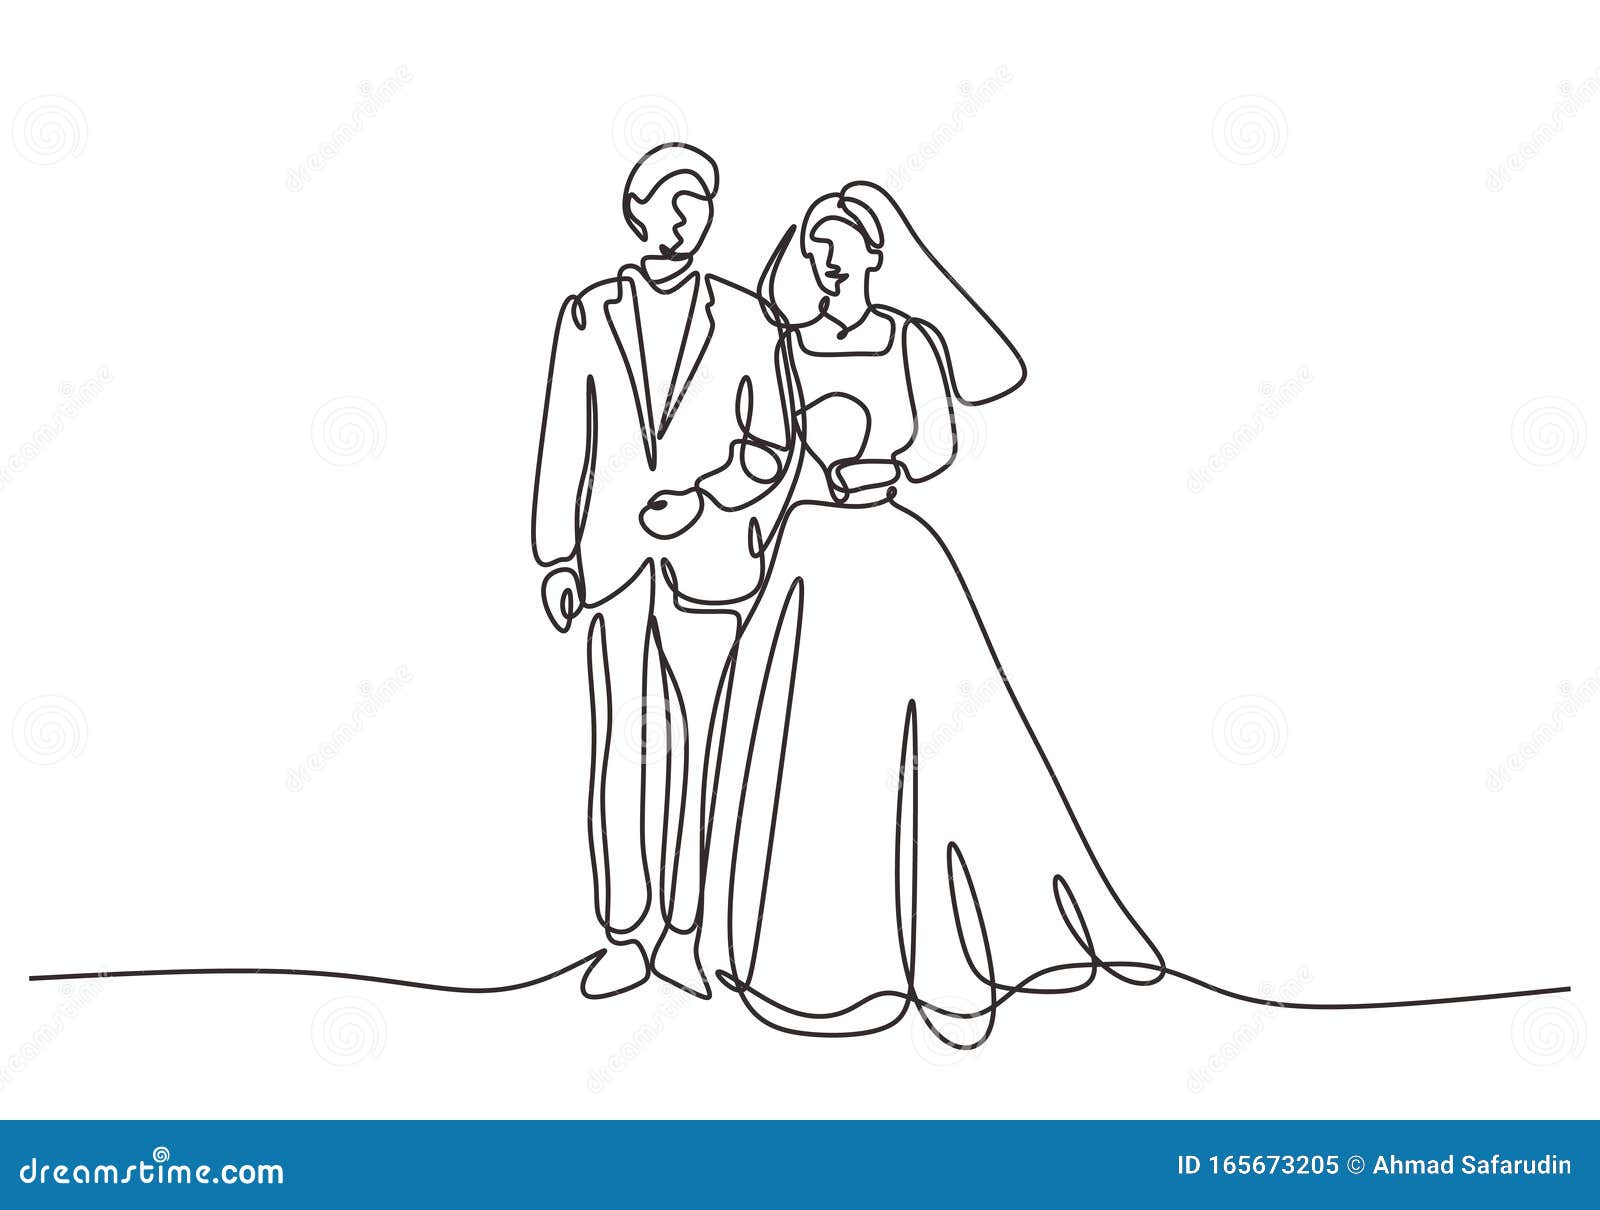 Wedding Sketch Images - Free Download on Freepik